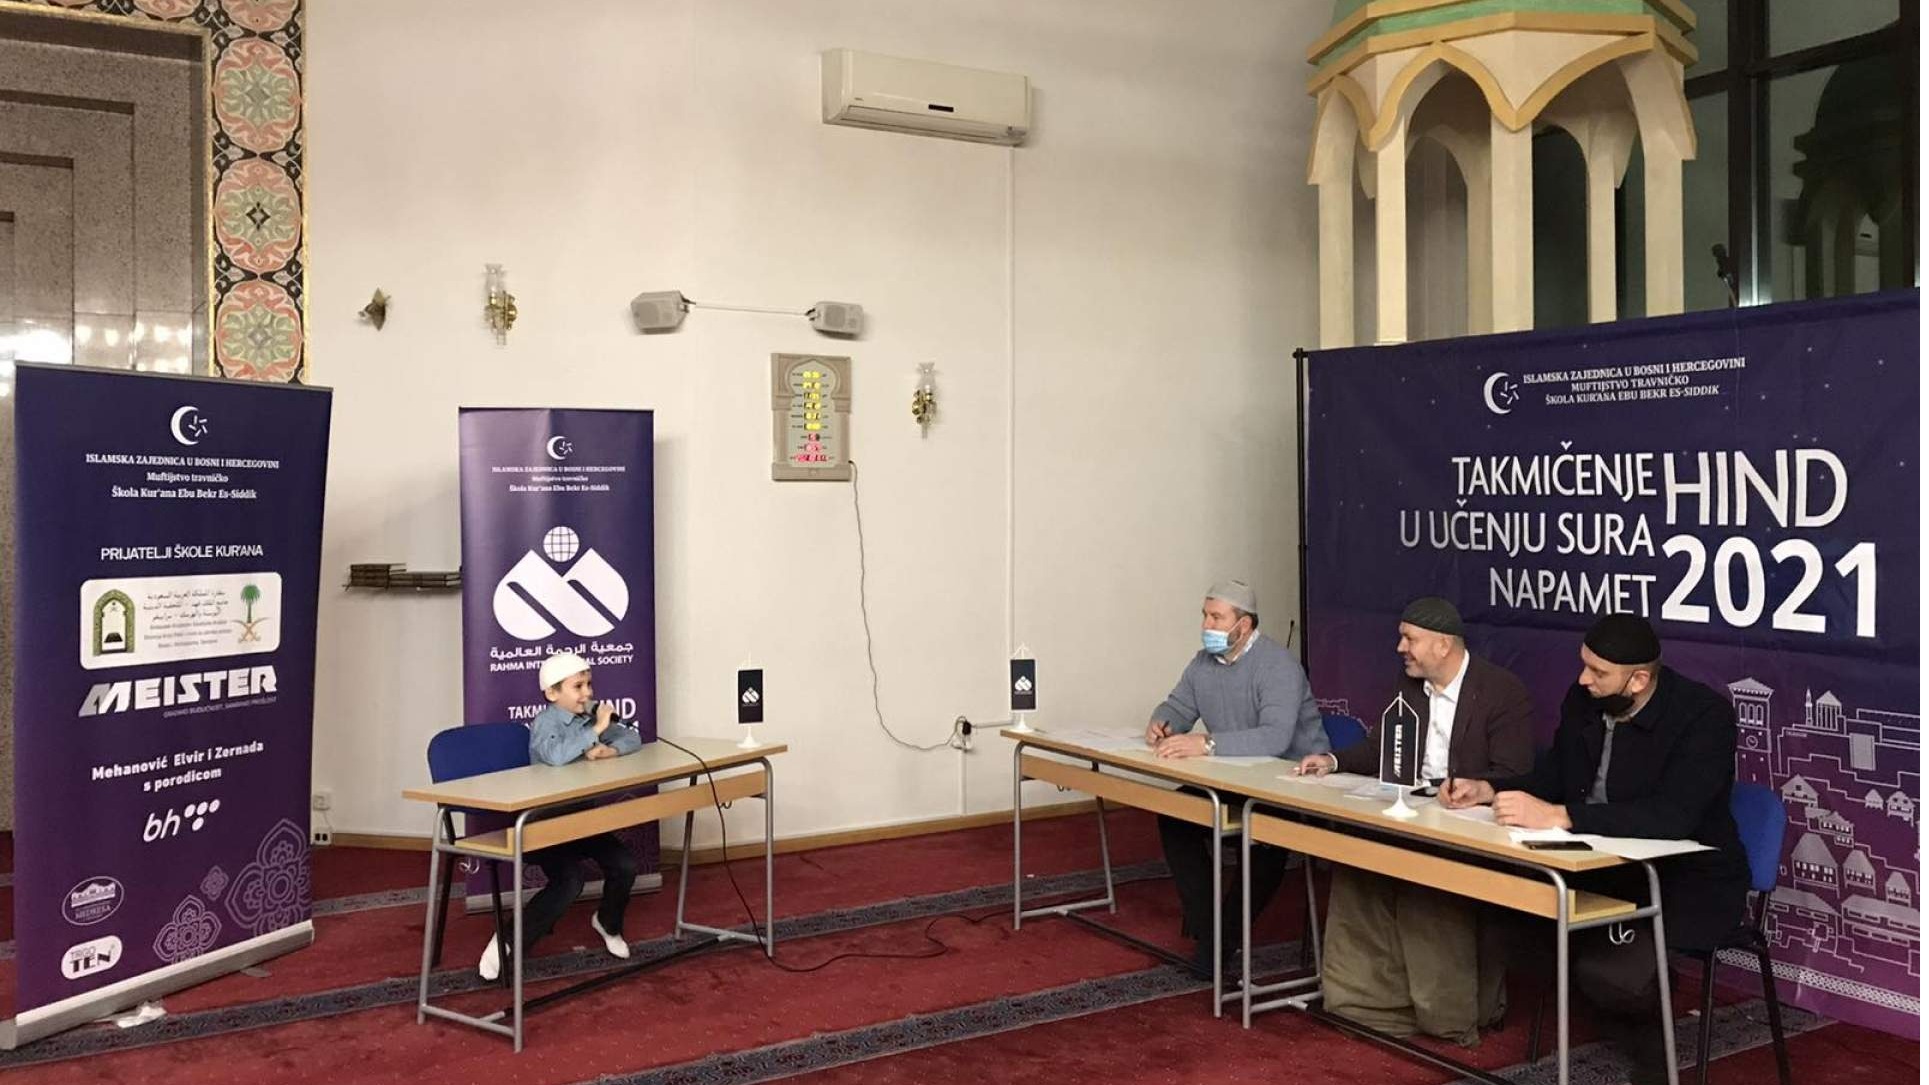 Takmičenje u učenju Kur'ana "Hind 2021": U Čaršijskoj džamiji u Novom Travniku sinoć održan prvi dio kvalifikacija